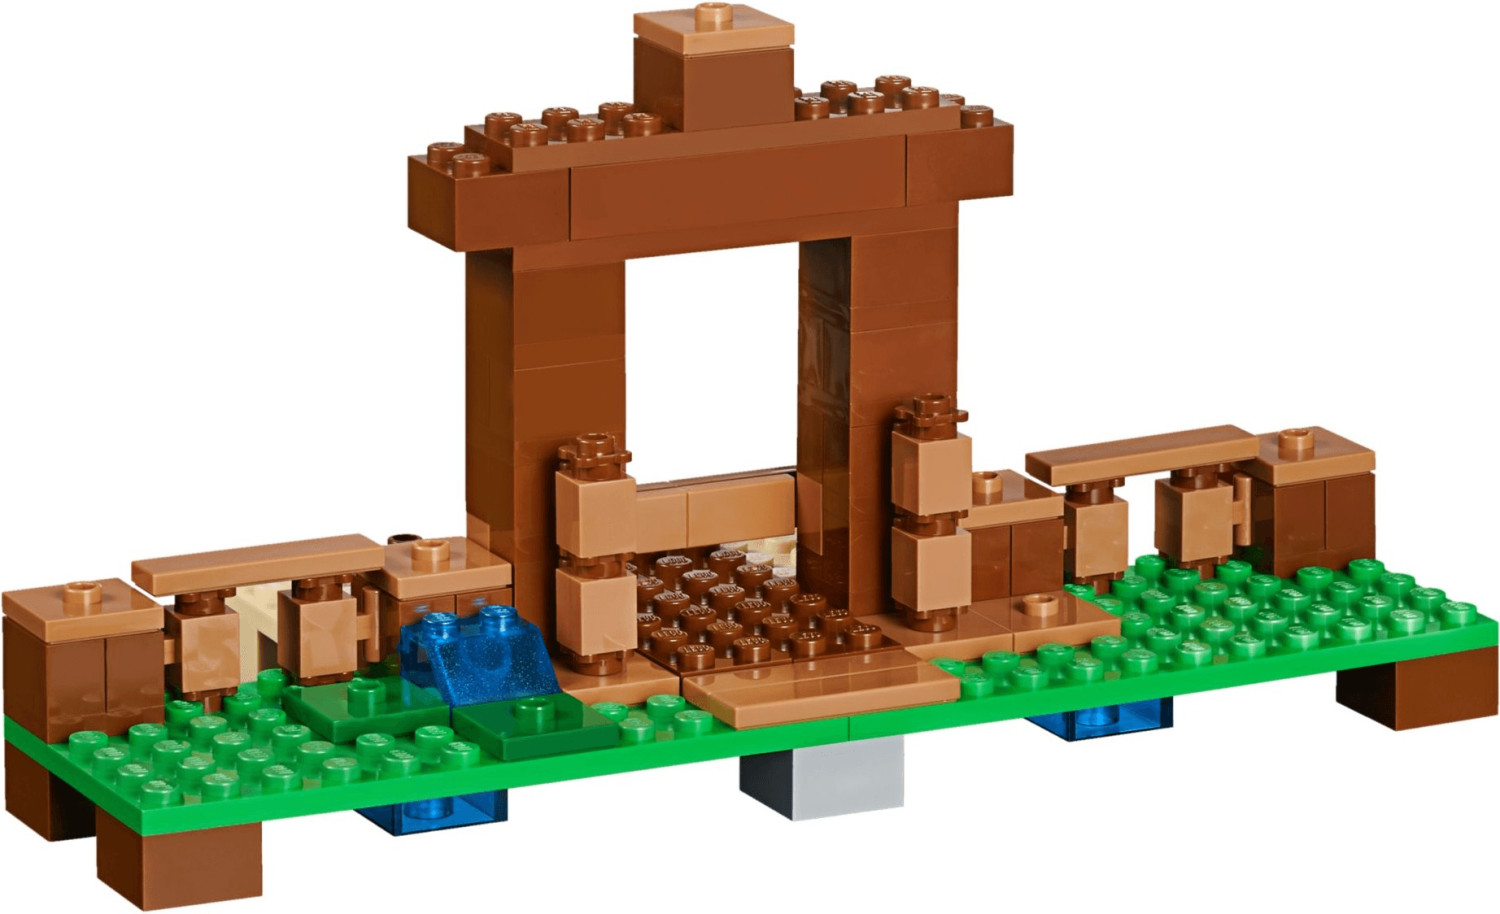 LEGO Minecraft 21249 La Boîte de Construction 4.0, Jouets 2-en-1 avec